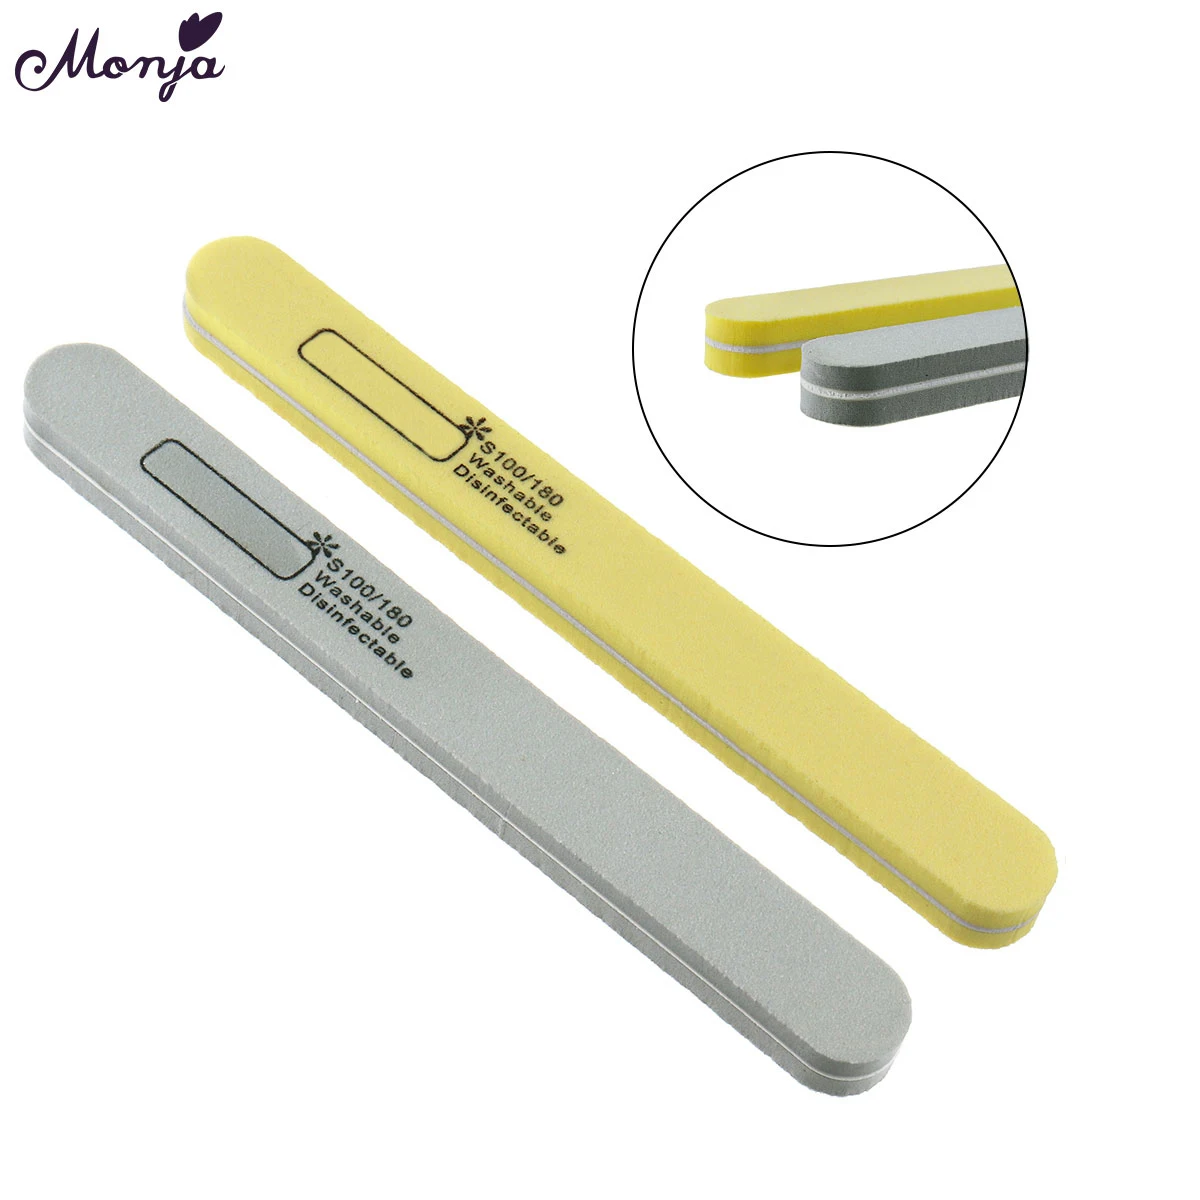 Monja 100/180 двухсторонняя пилка для ногтей шлифовальная полировка зернистость